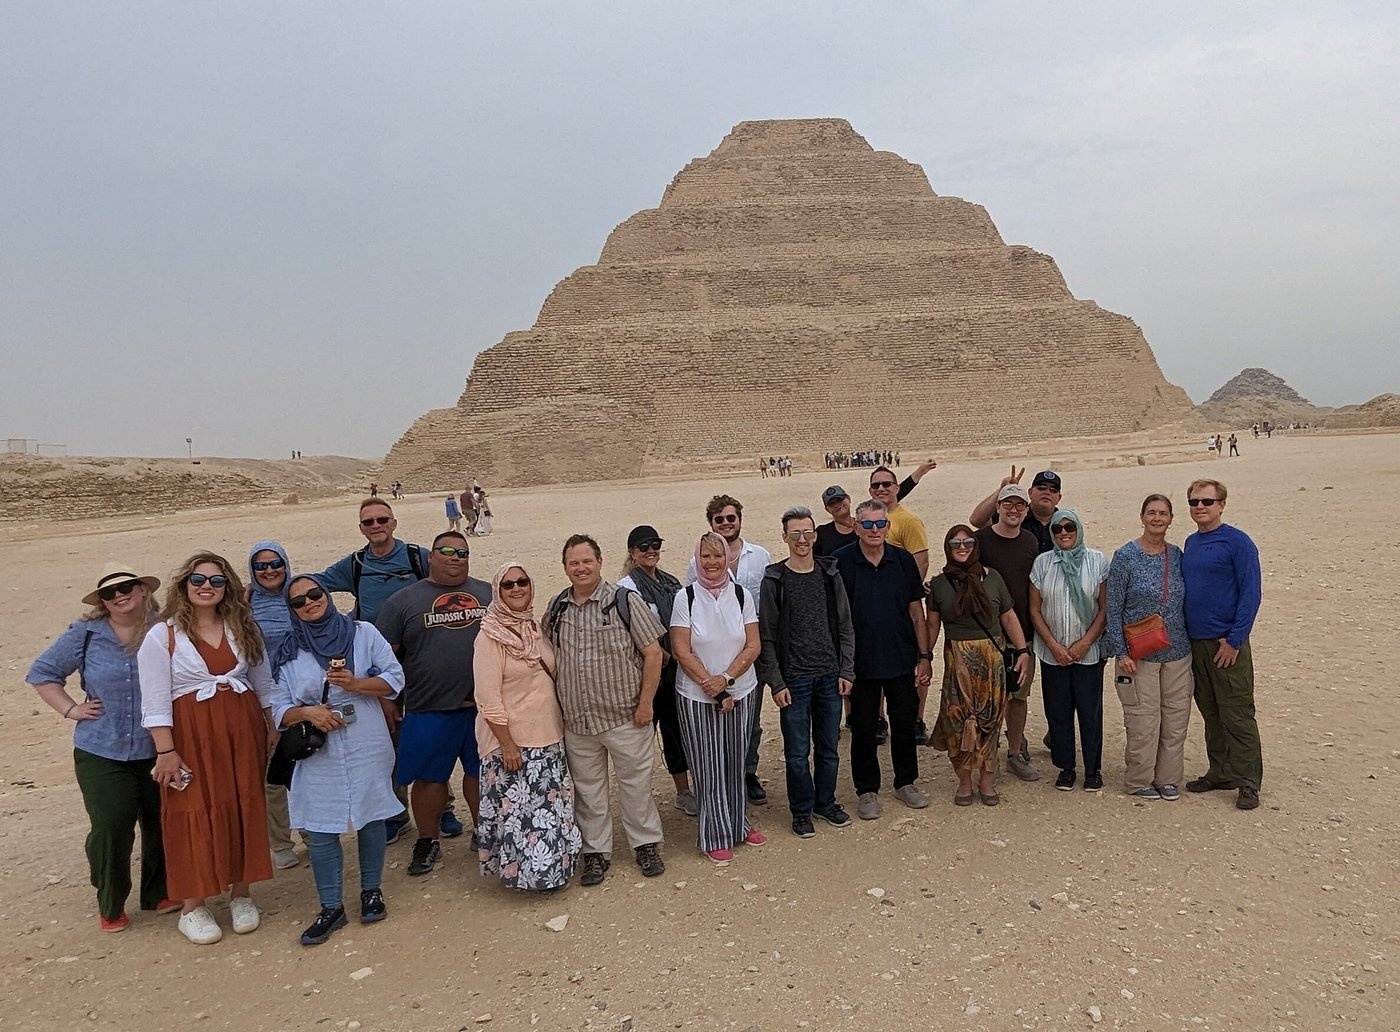 tourhub | Upper Egypt Tours | 11 Days Cairo, Alexandria & Nile Cruise 